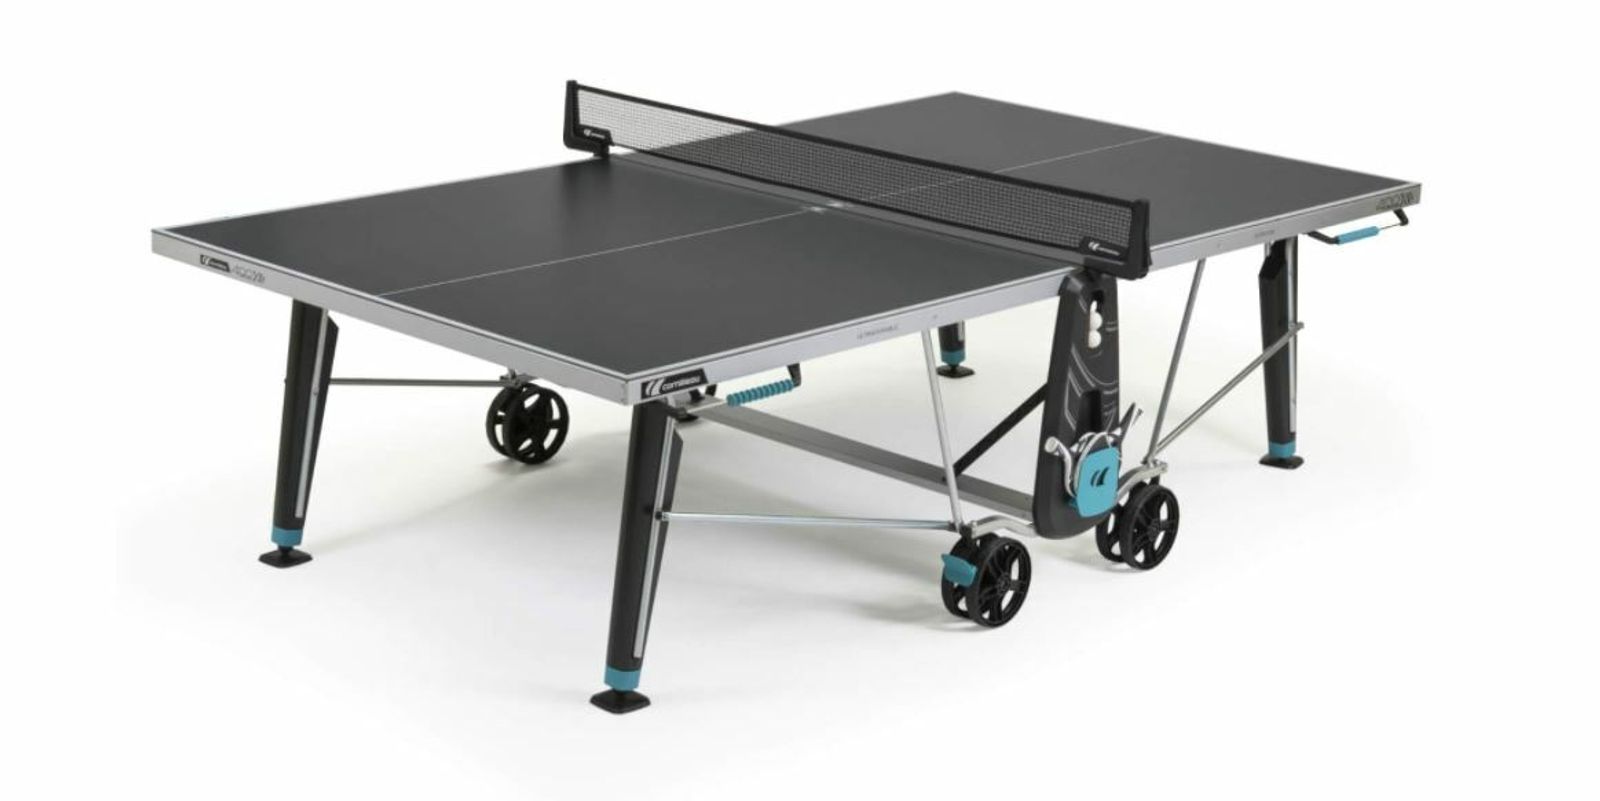 Теннисный стол Cornilleau всепогодный 400X Outdoor grey 5 mm фото №1